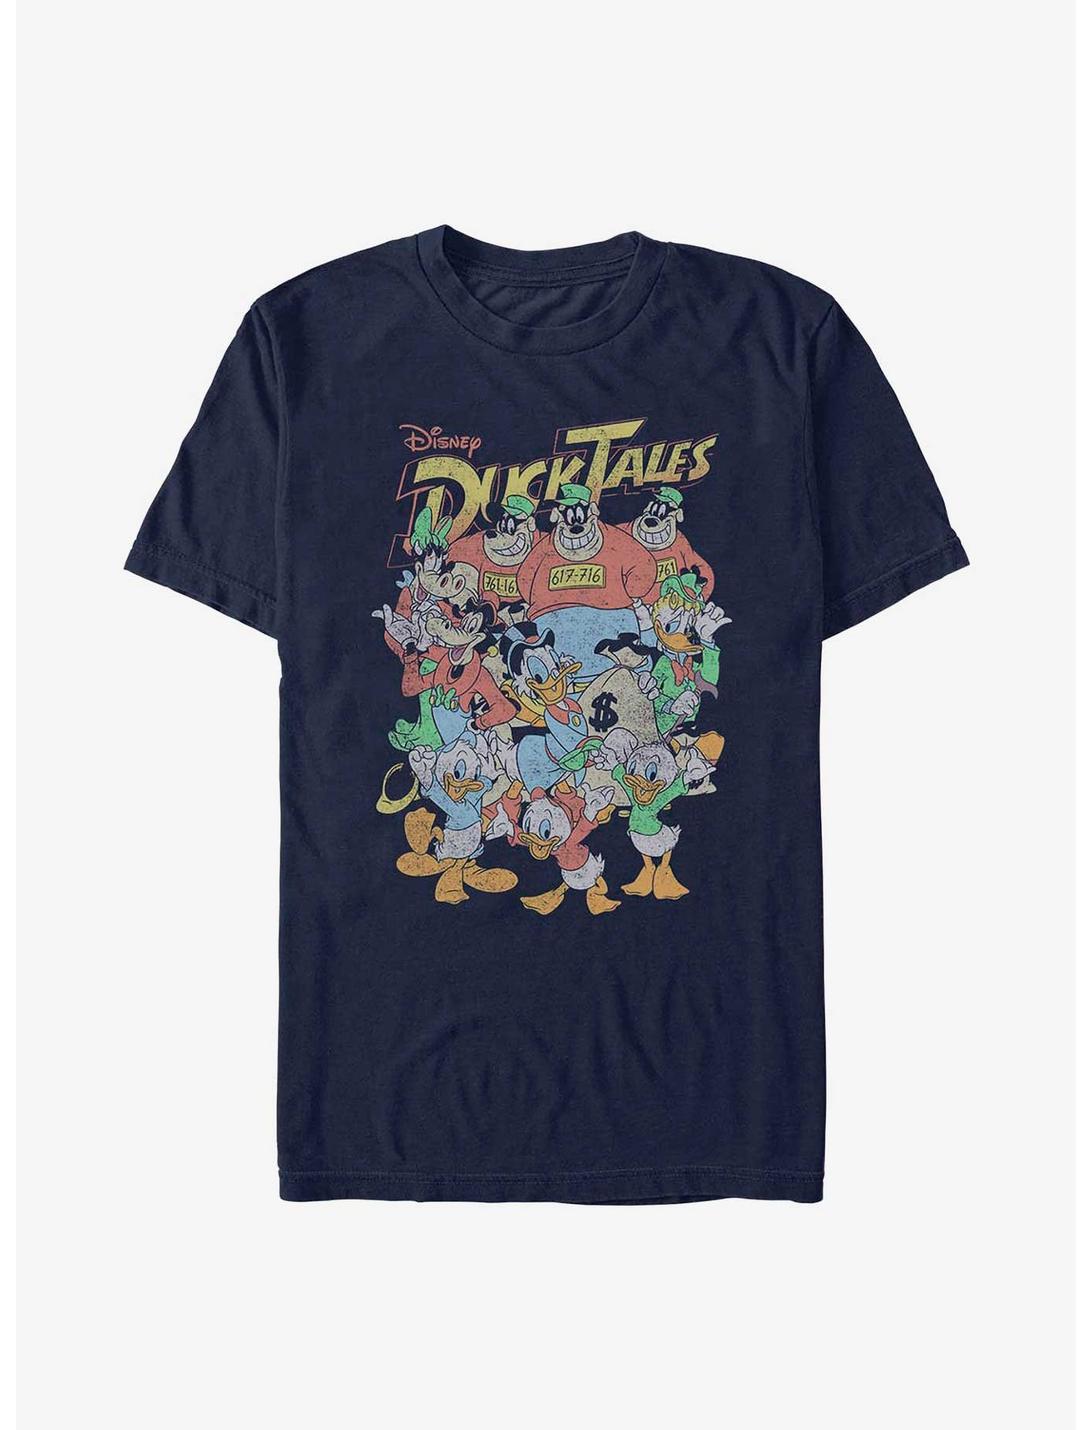 Disney Ducktales Ducktales Crew T-Shirt, NAVY, hi-res